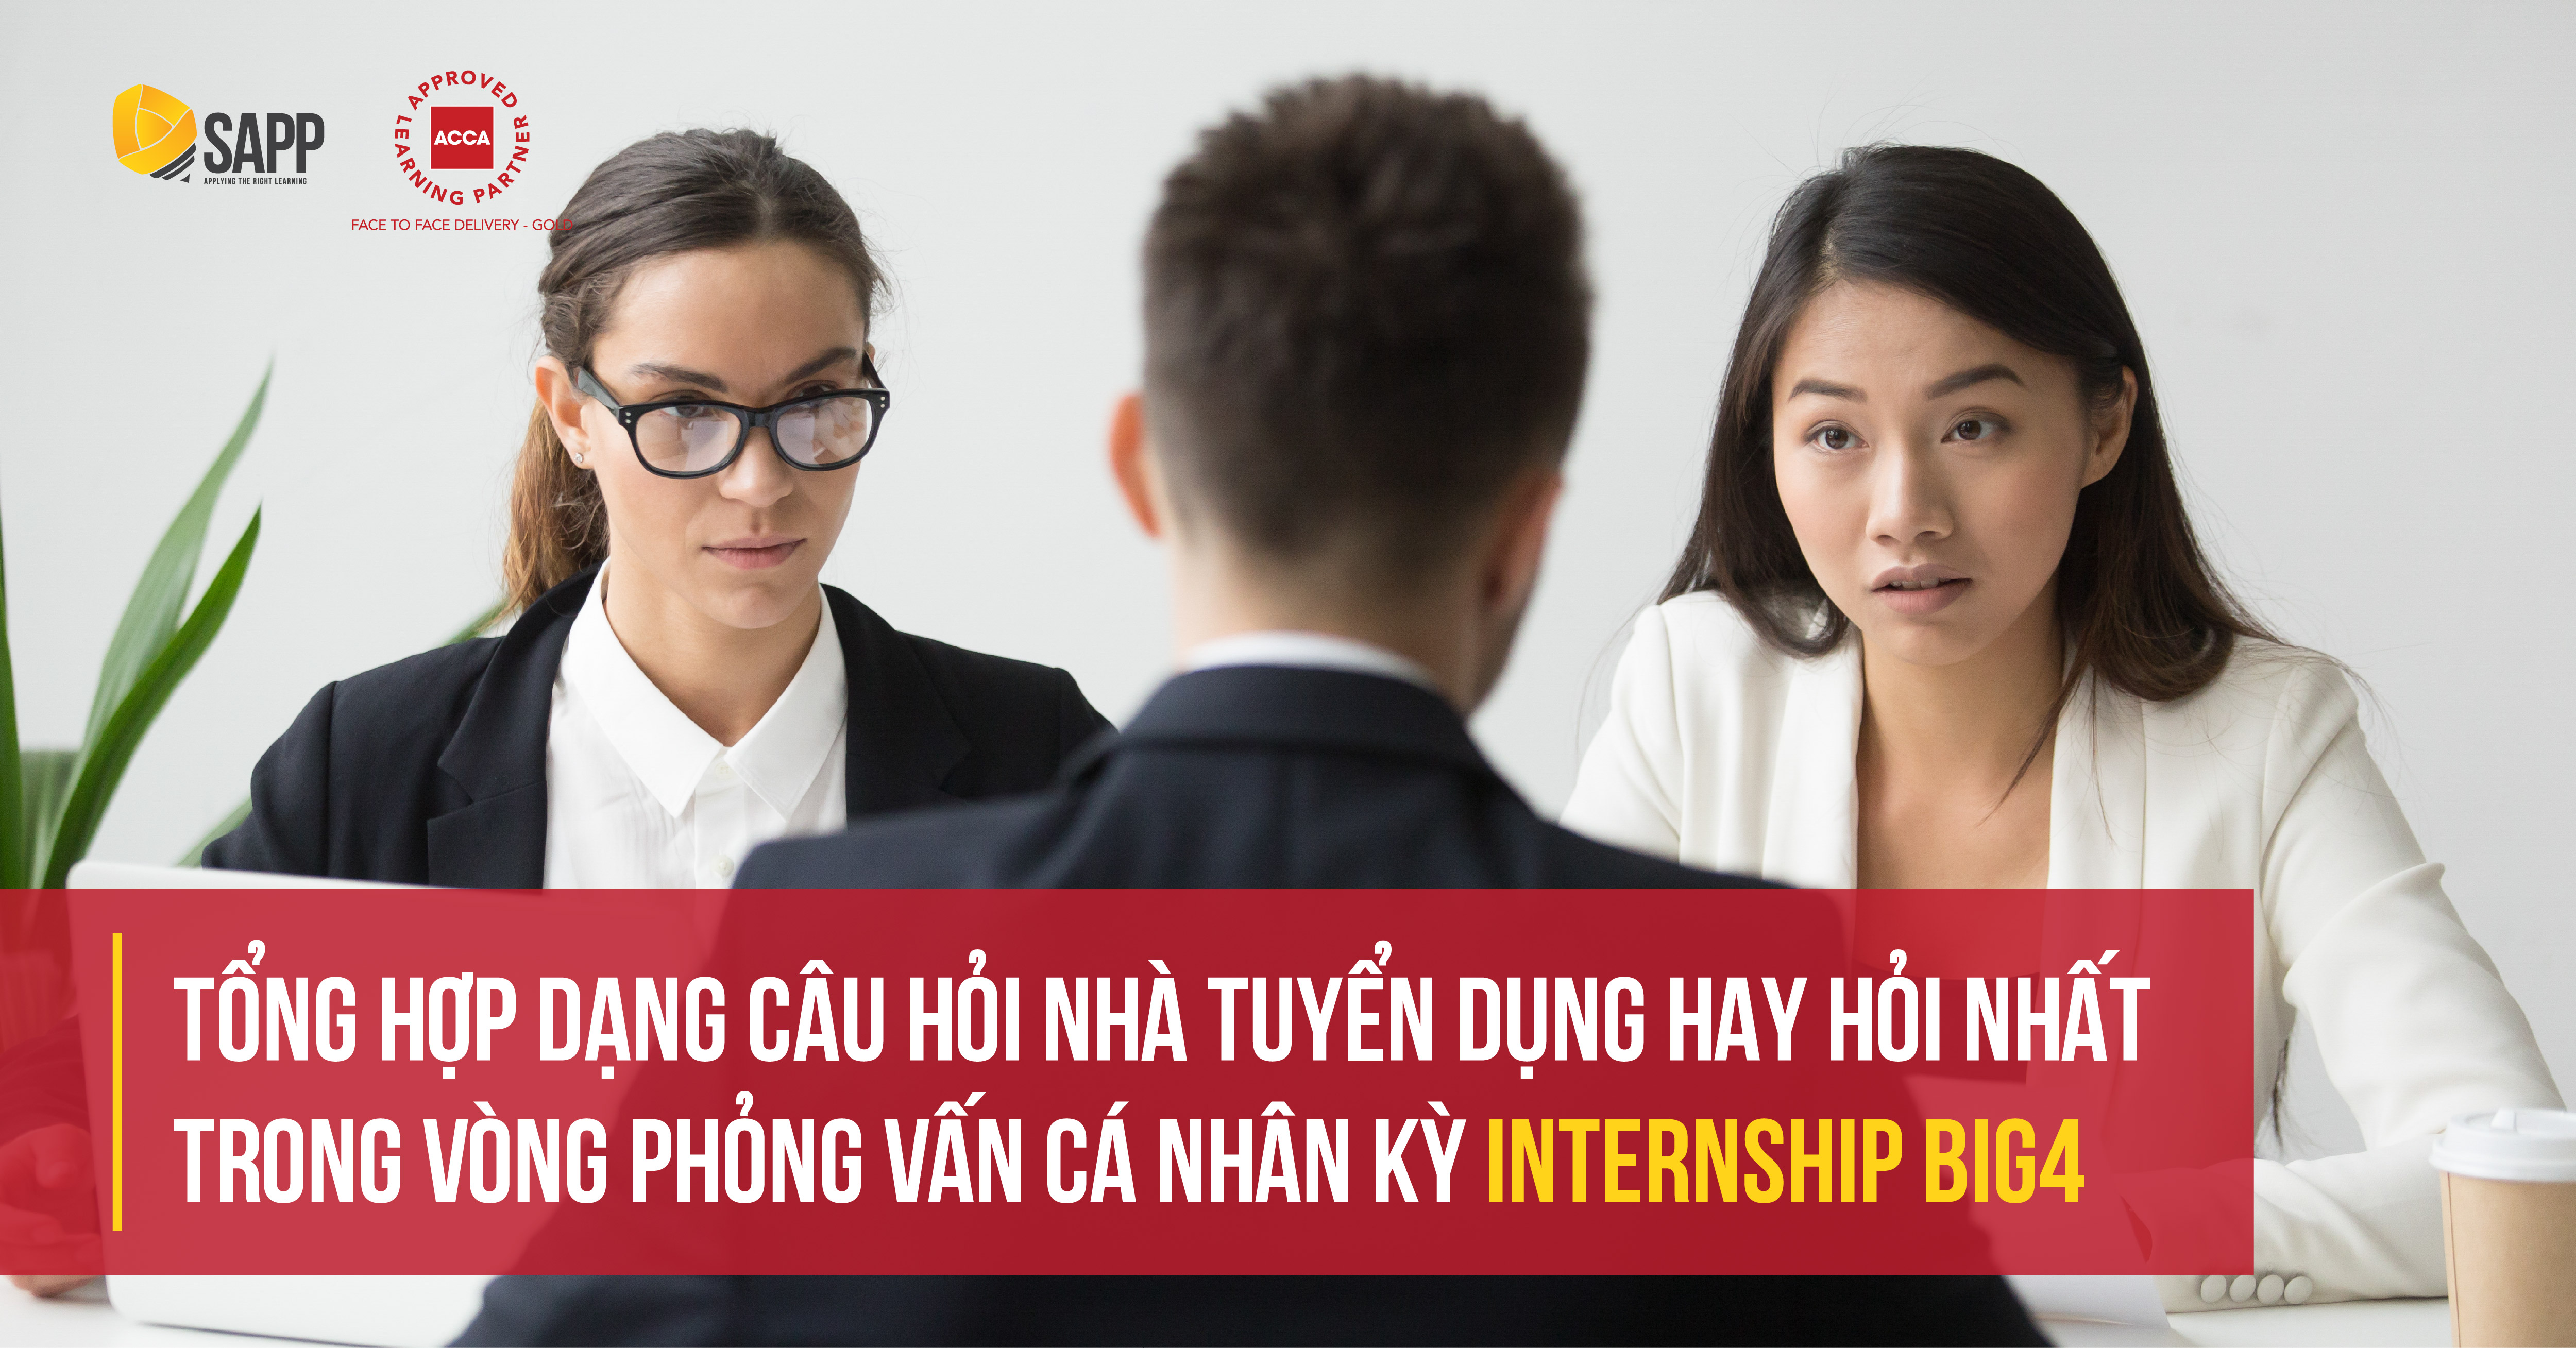 Tổng hợp dạng câu hỏi nhà tuyển dụng hay hỏi nhất trong vòng phỏng vấn cá nhân kỳ Internship BIG4